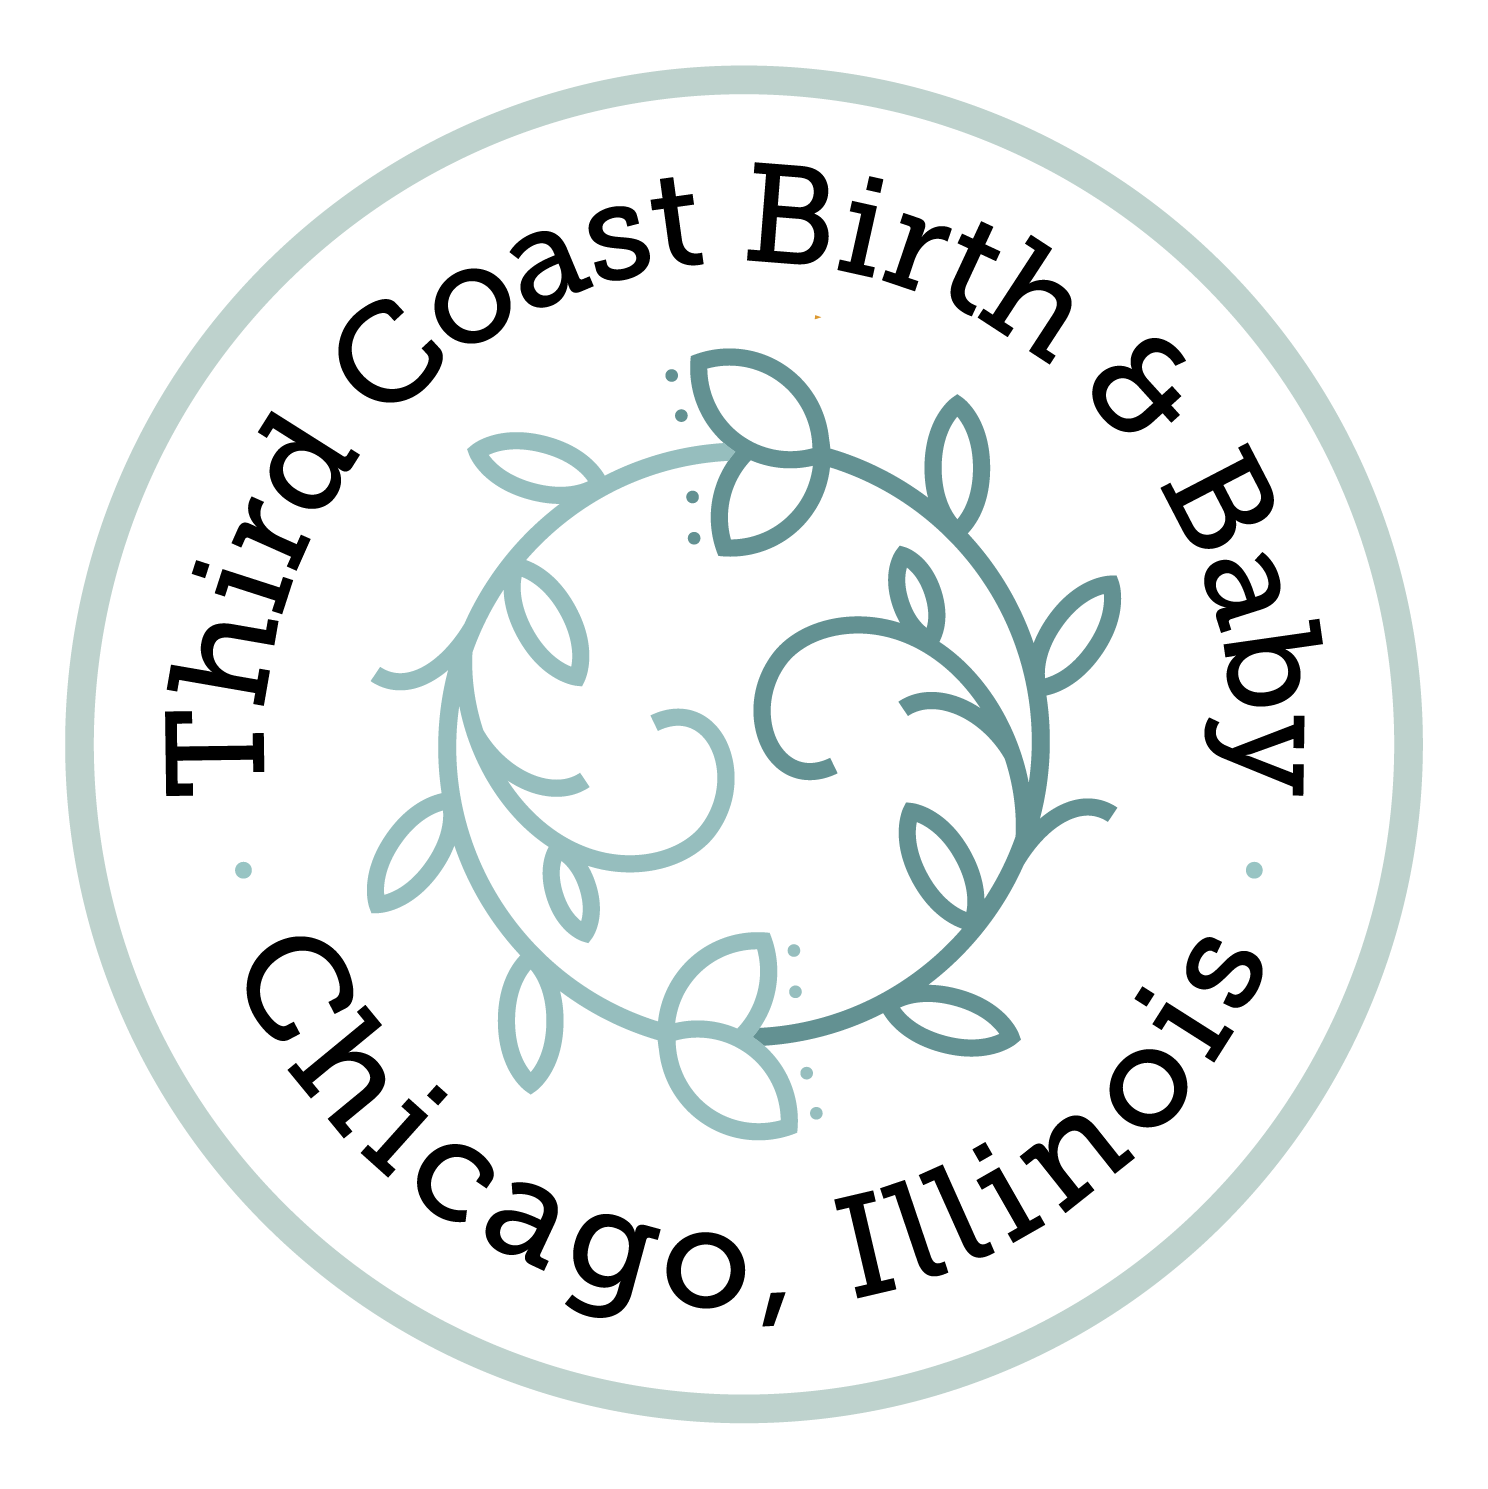 Third Coast Birth &amp; Baby